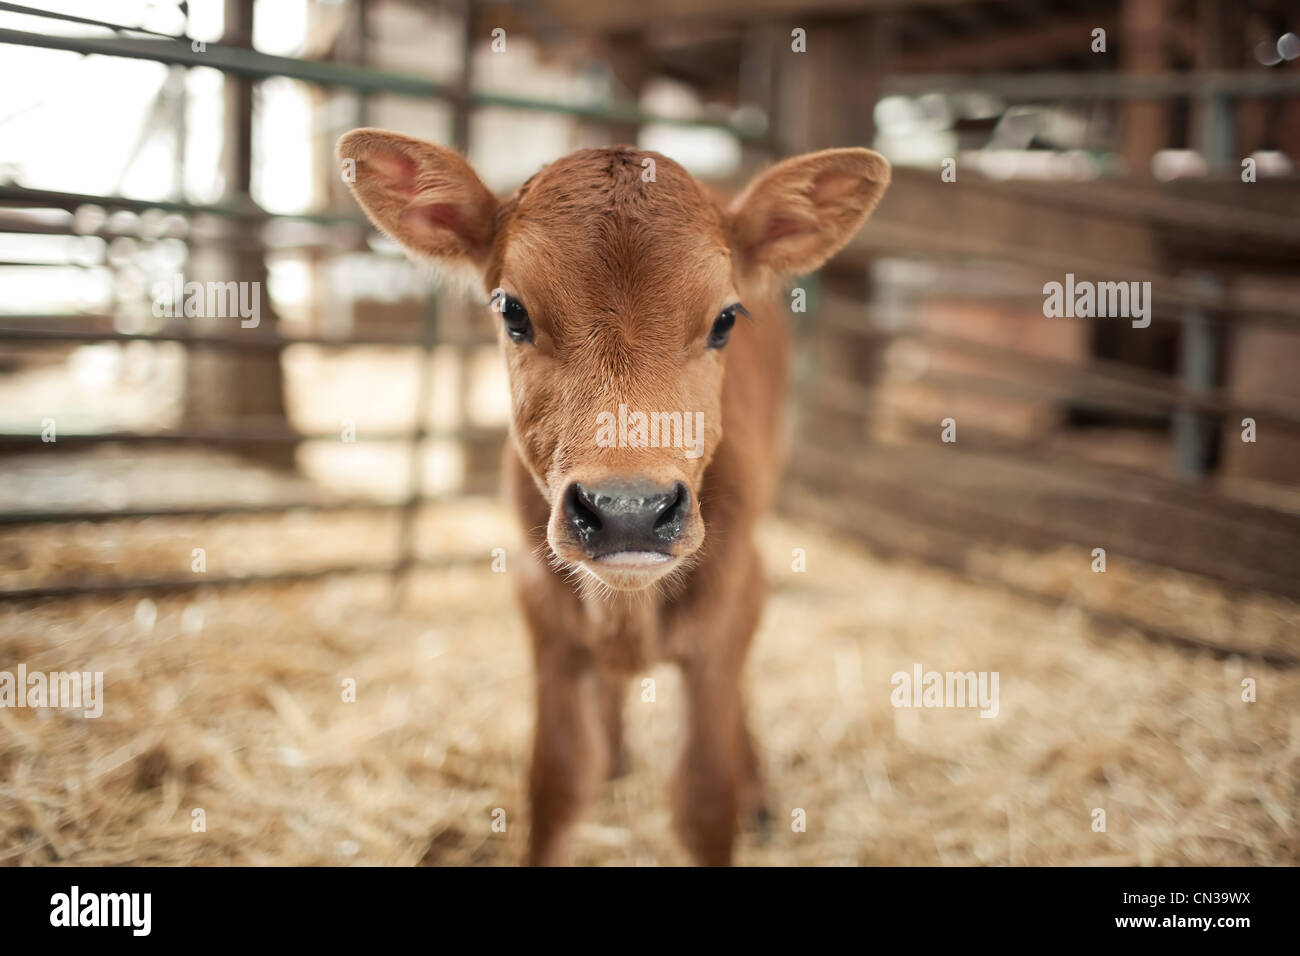 Calf in a barn Stock Photo